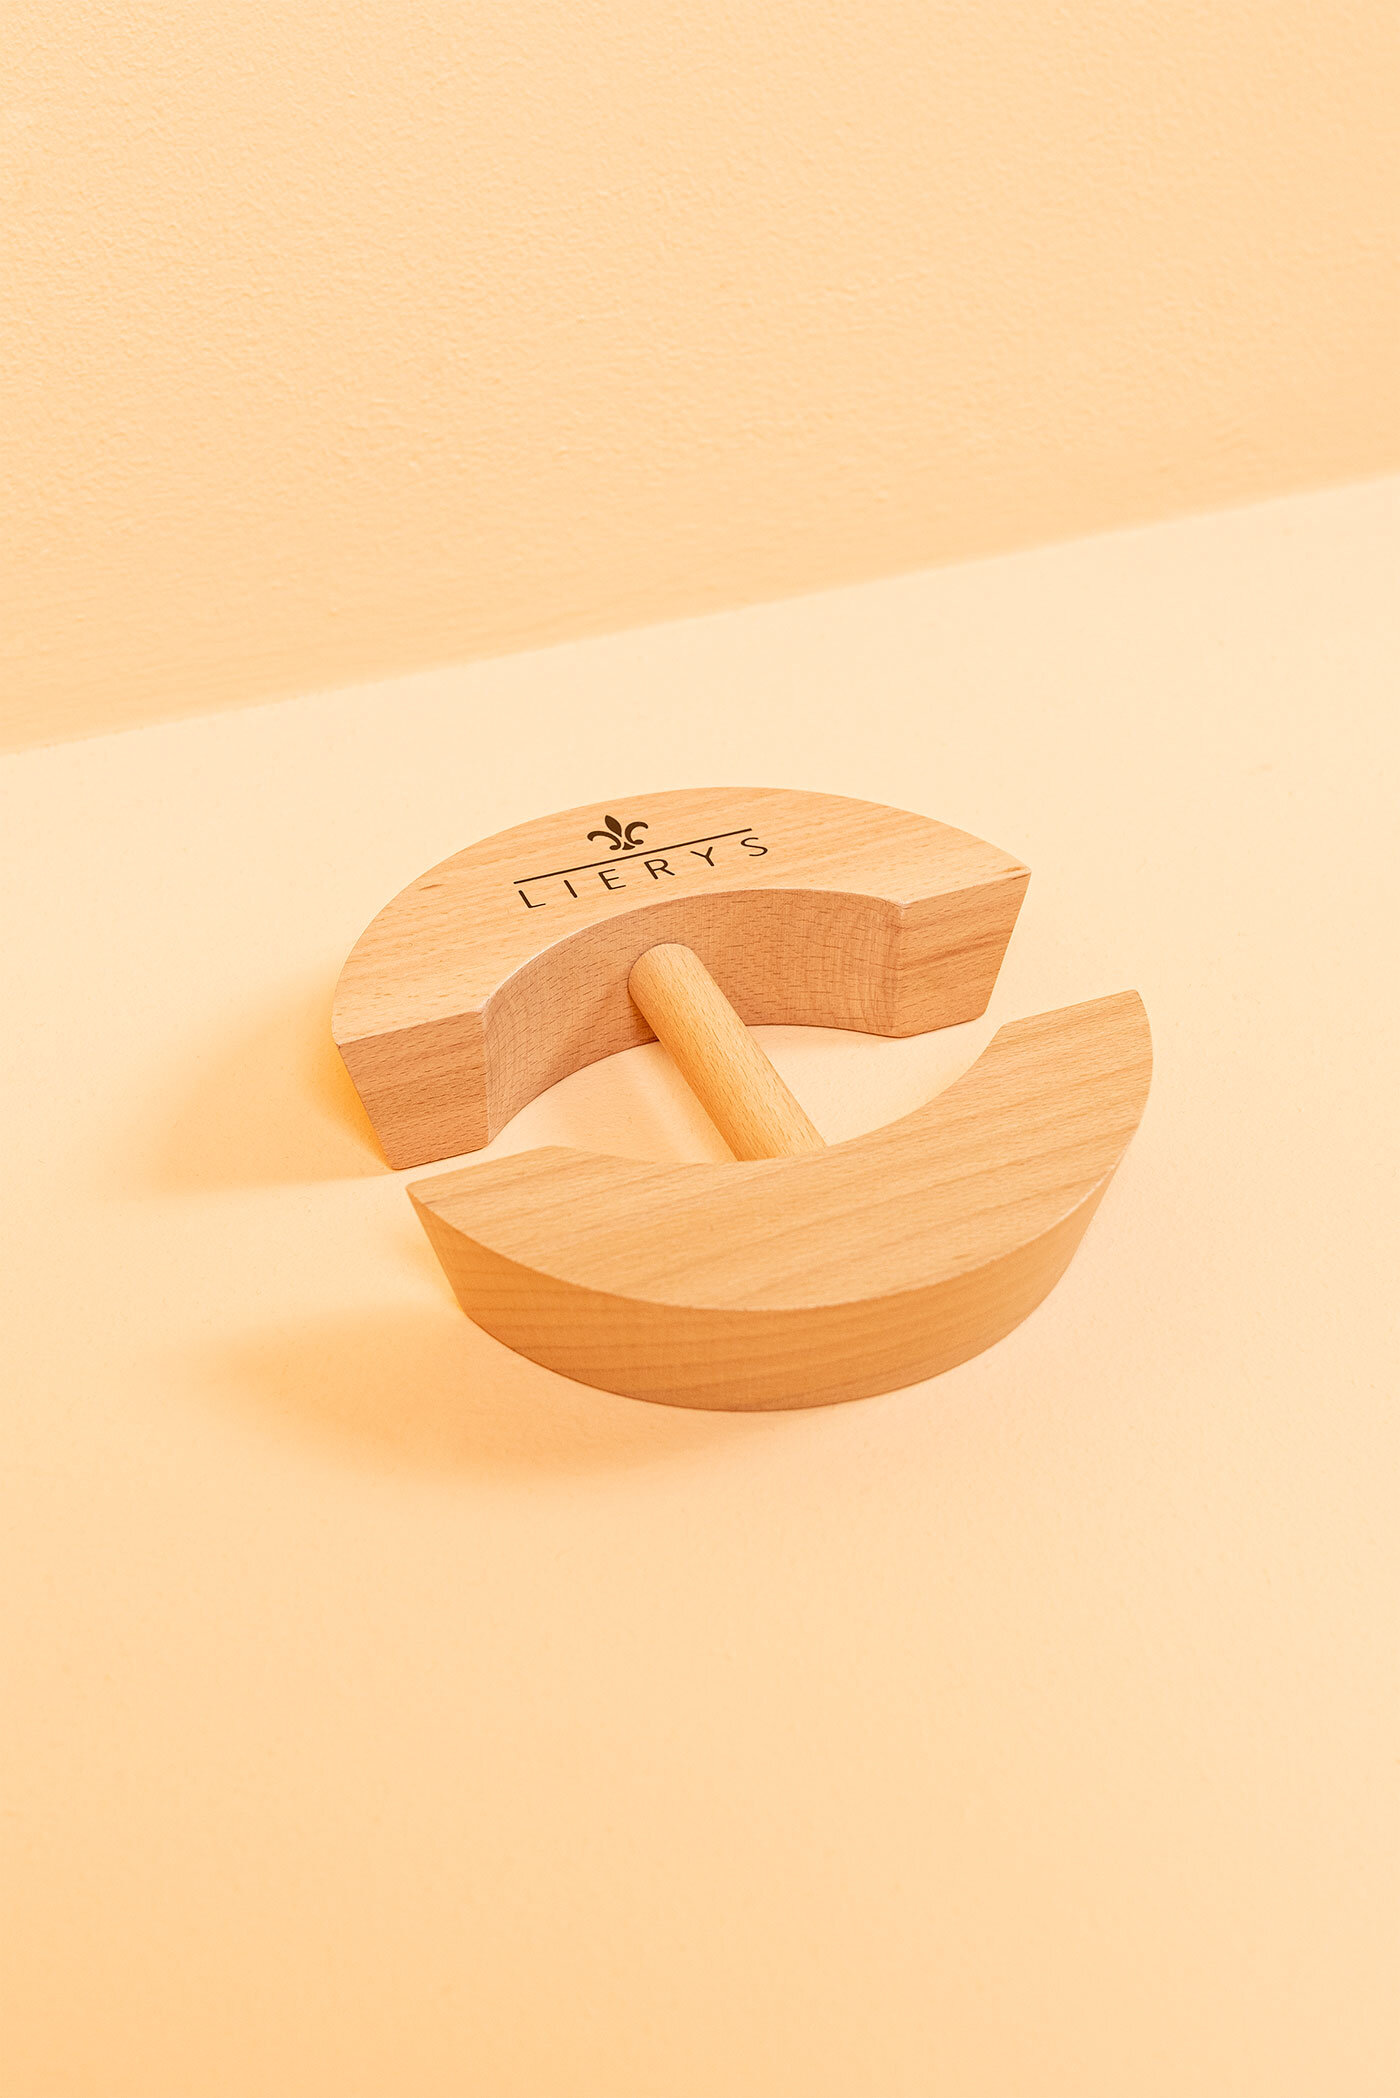 LIERYS Hutspanner/Capspanner - Hutausweiter aus Holz